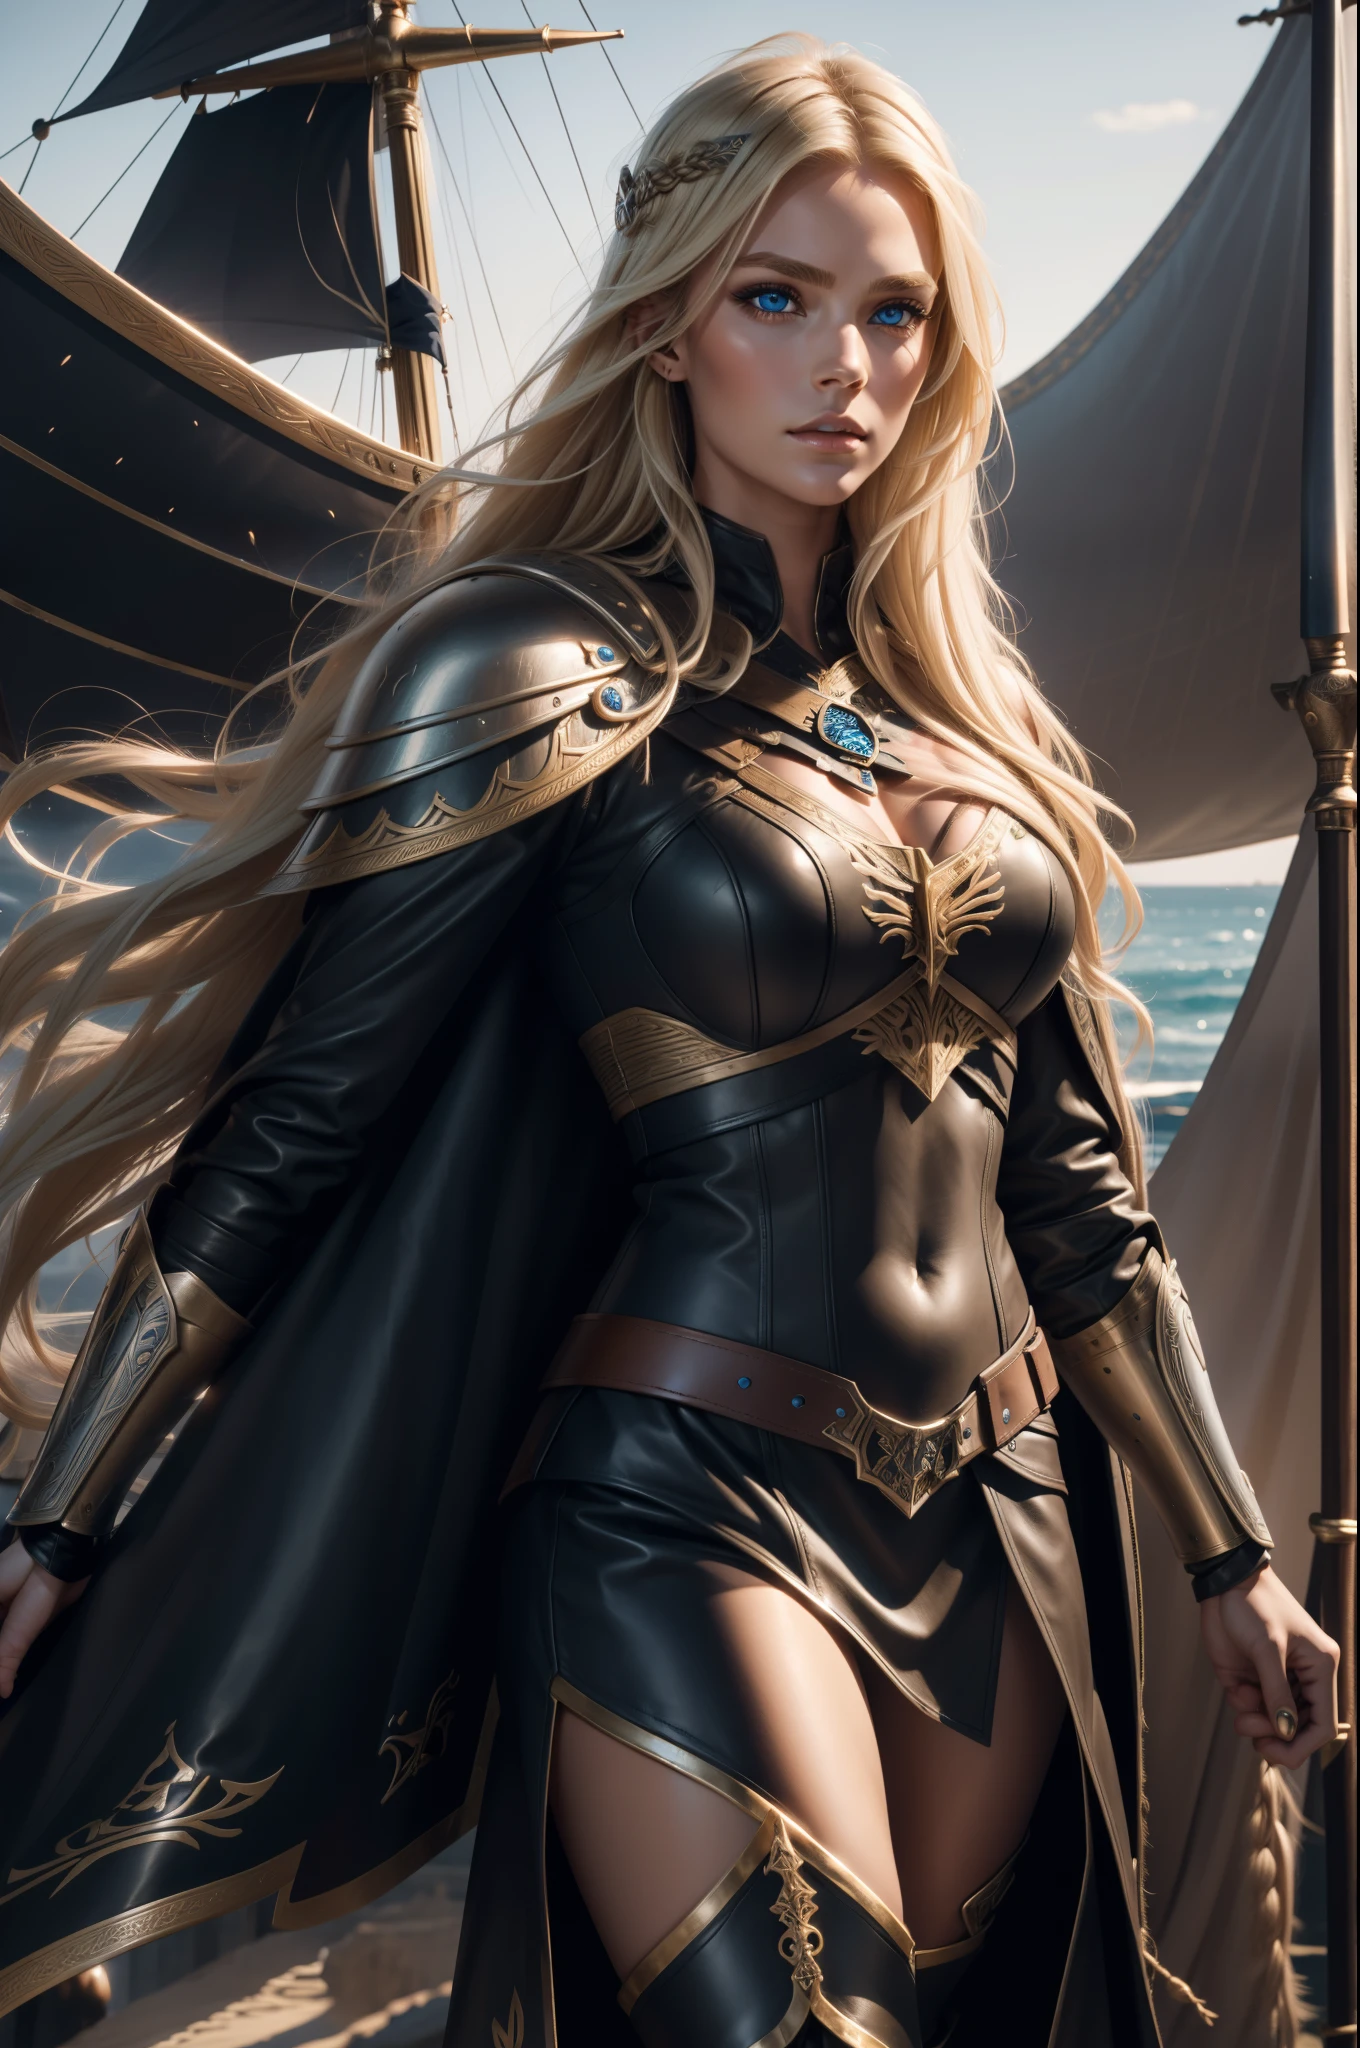 ゴージャスな女性, ヴァルキリー, 長いブロンドの髪, 青い目, 詳細な顔の特徴, 比例針, 比例指, 革の鎧, 毛皮のケープ, ヴァイキング船,